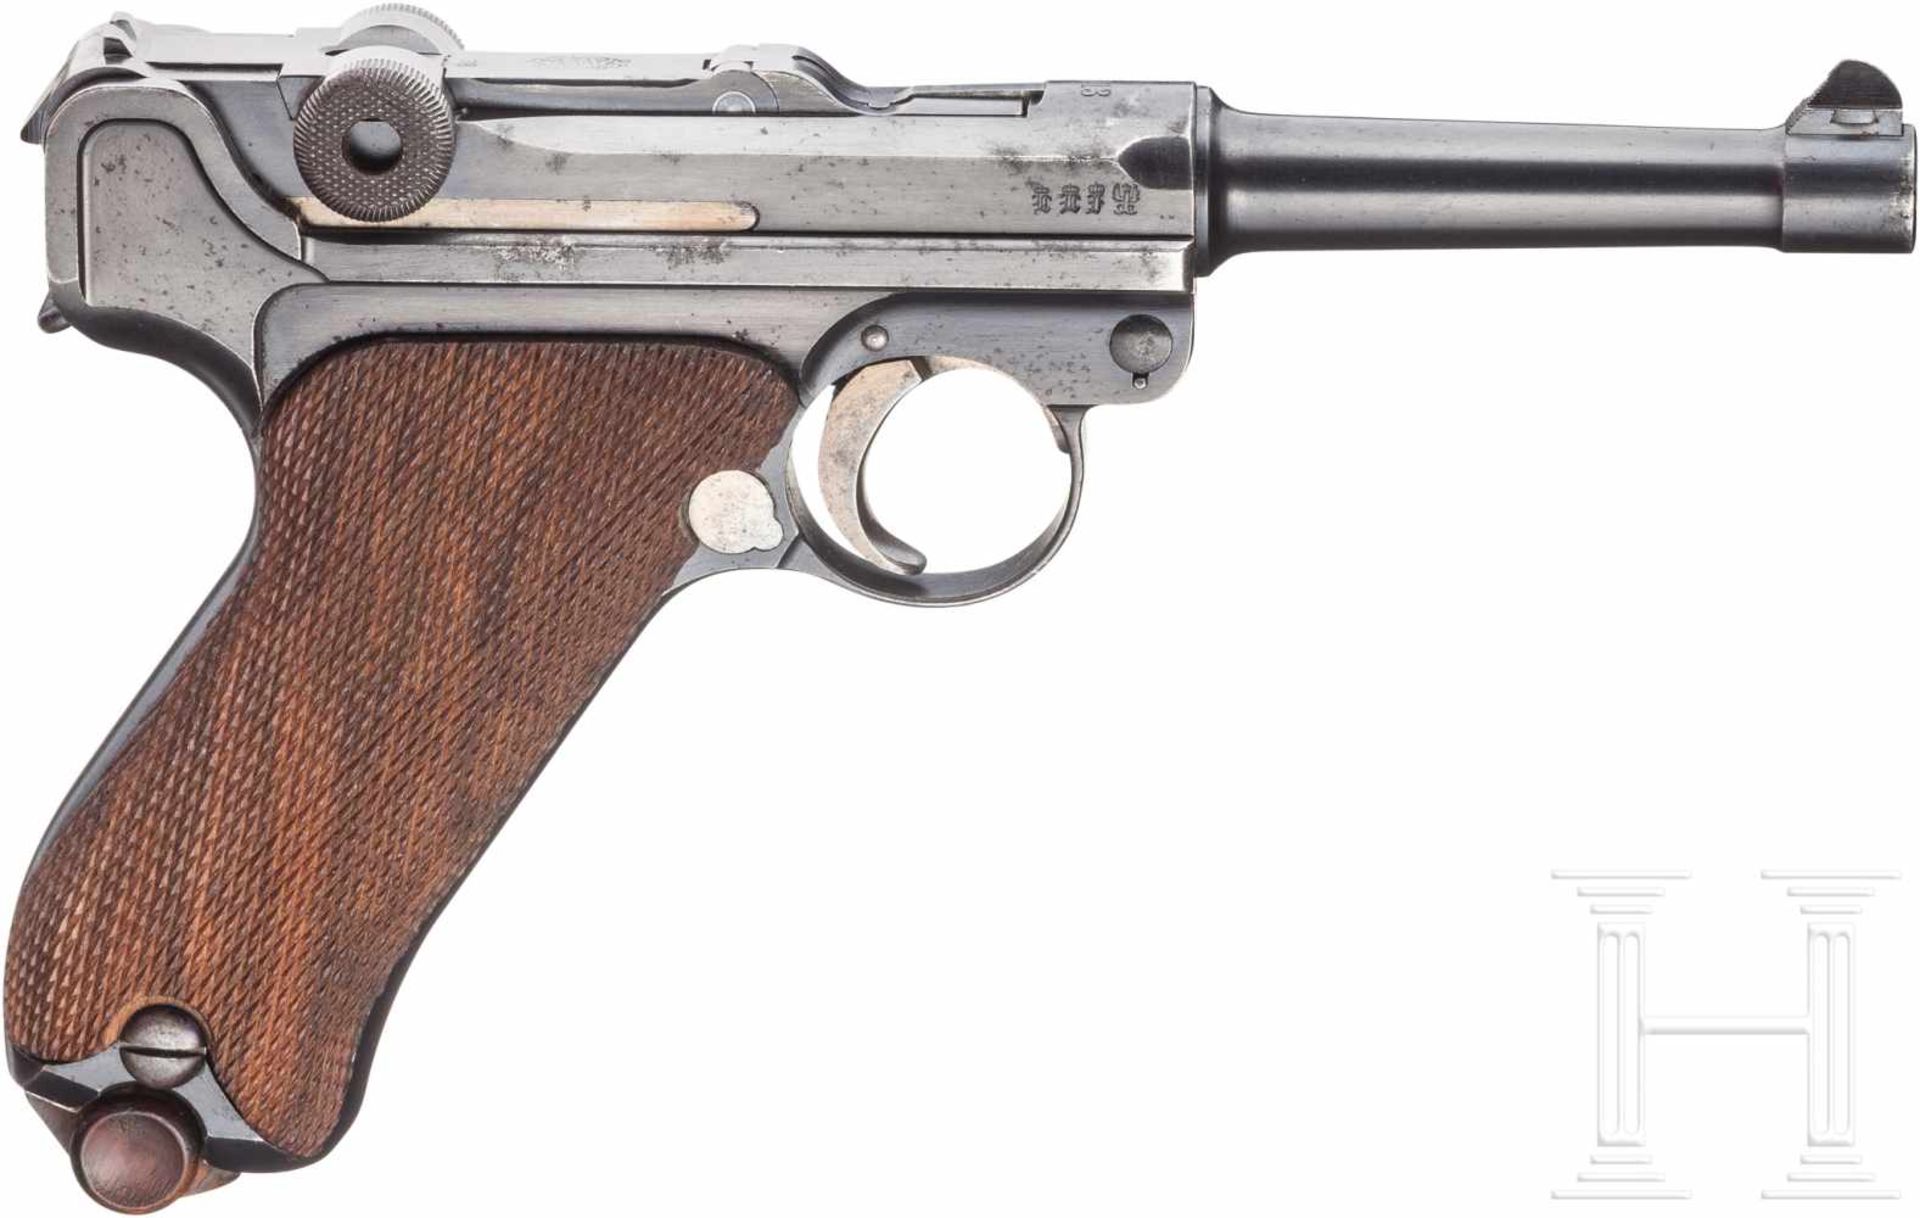 Pistole 08, DWM 1913, ohne Kammerfang, im KastenKal. 9 mm Luger, Nr. 1138, Nummerngleich. Lauf matt. - Bild 2 aus 2